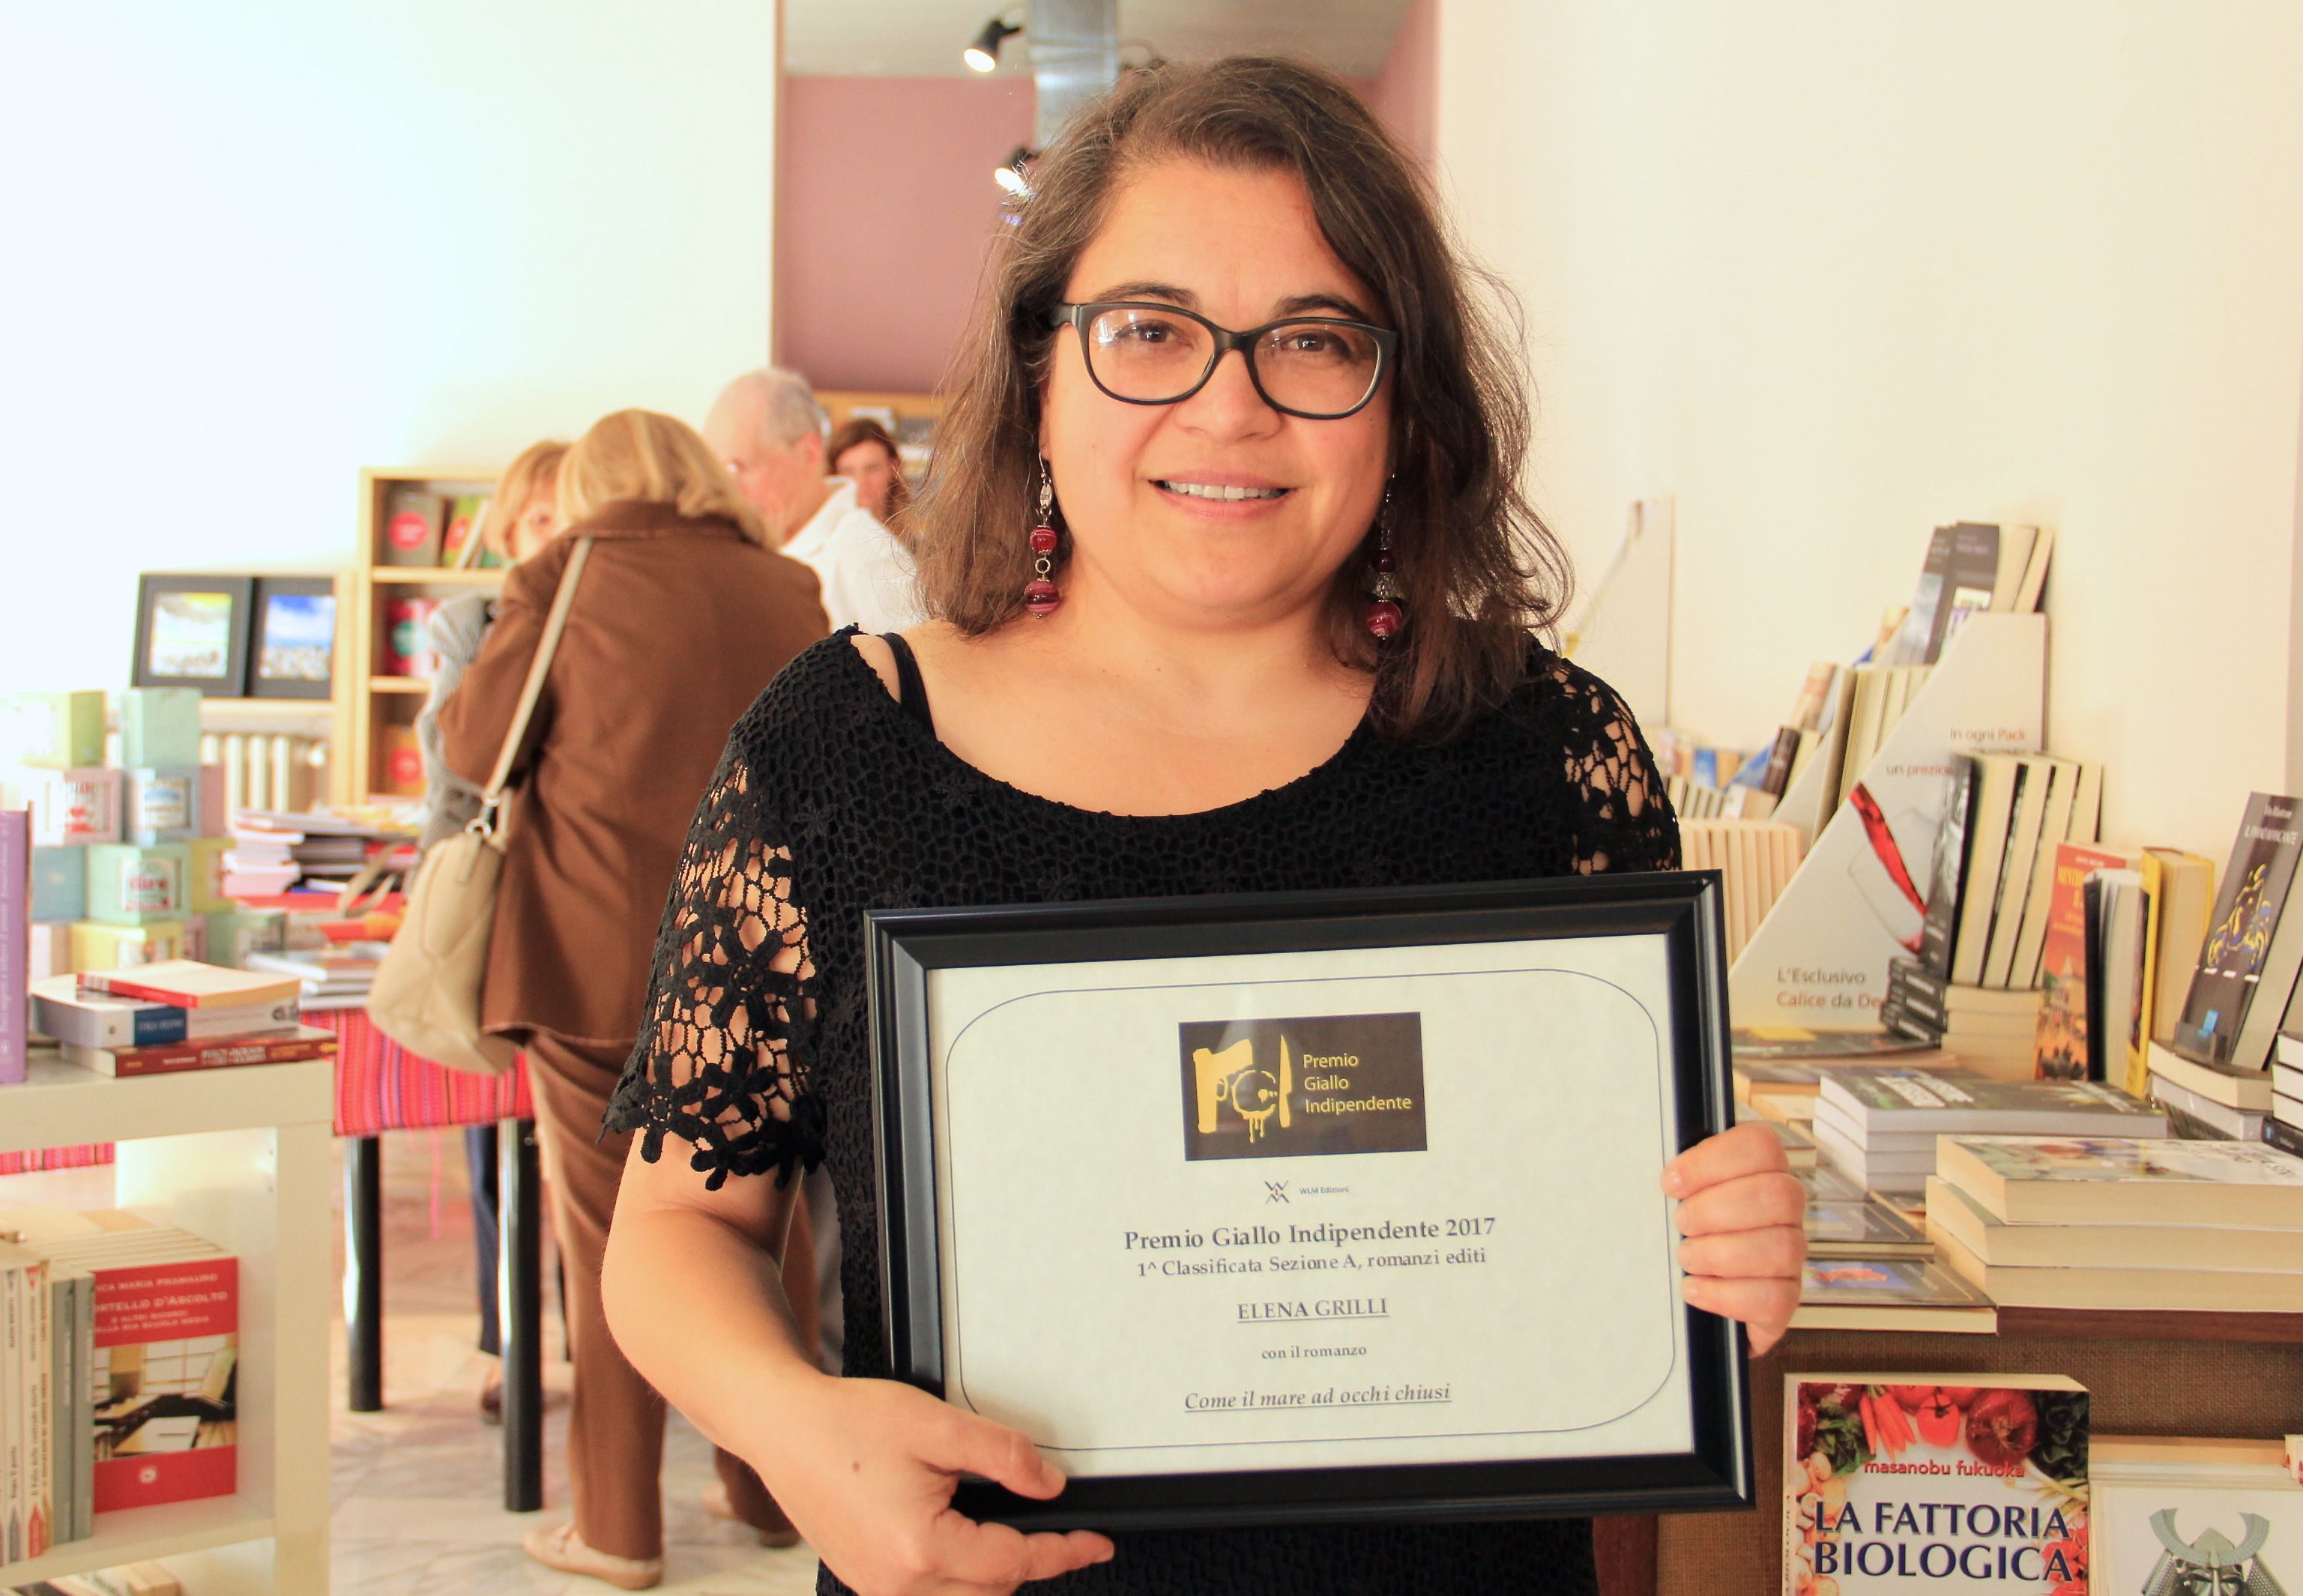 Foto vincitrice Sezione A romanzi editi Premio Giallo Indipendente 2017